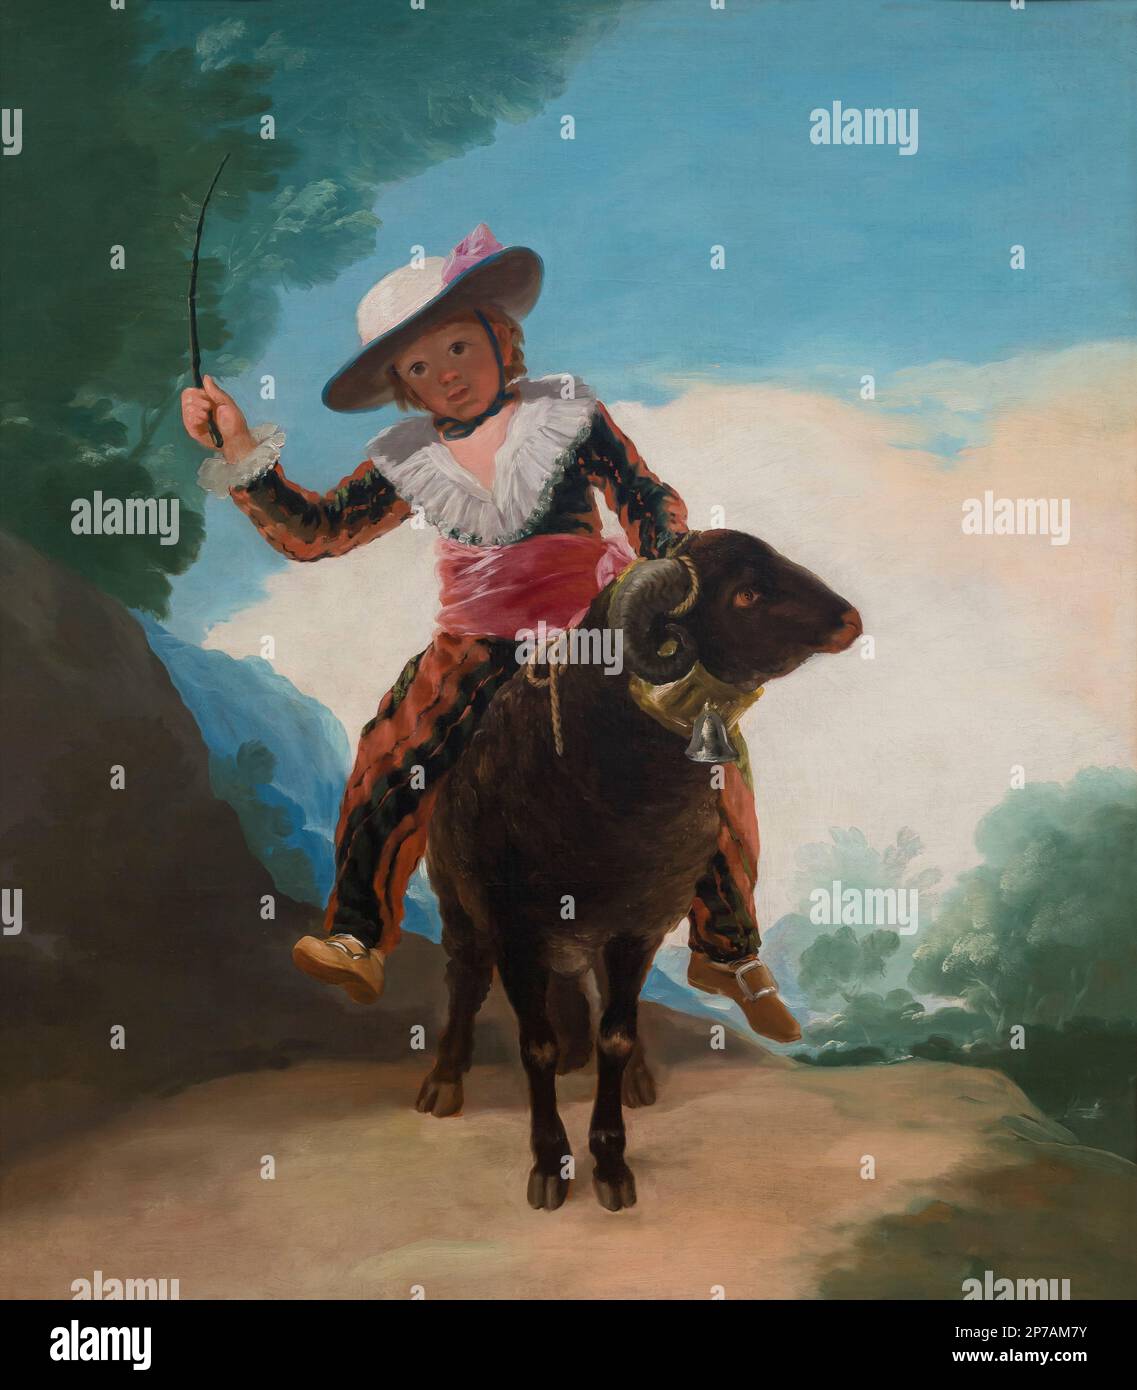 Ragazzo su una Ram, Francisco Goya, 1786-1787, Art Institute of Chicago, Chicago, Illinois, USA, America del nord, Foto Stock